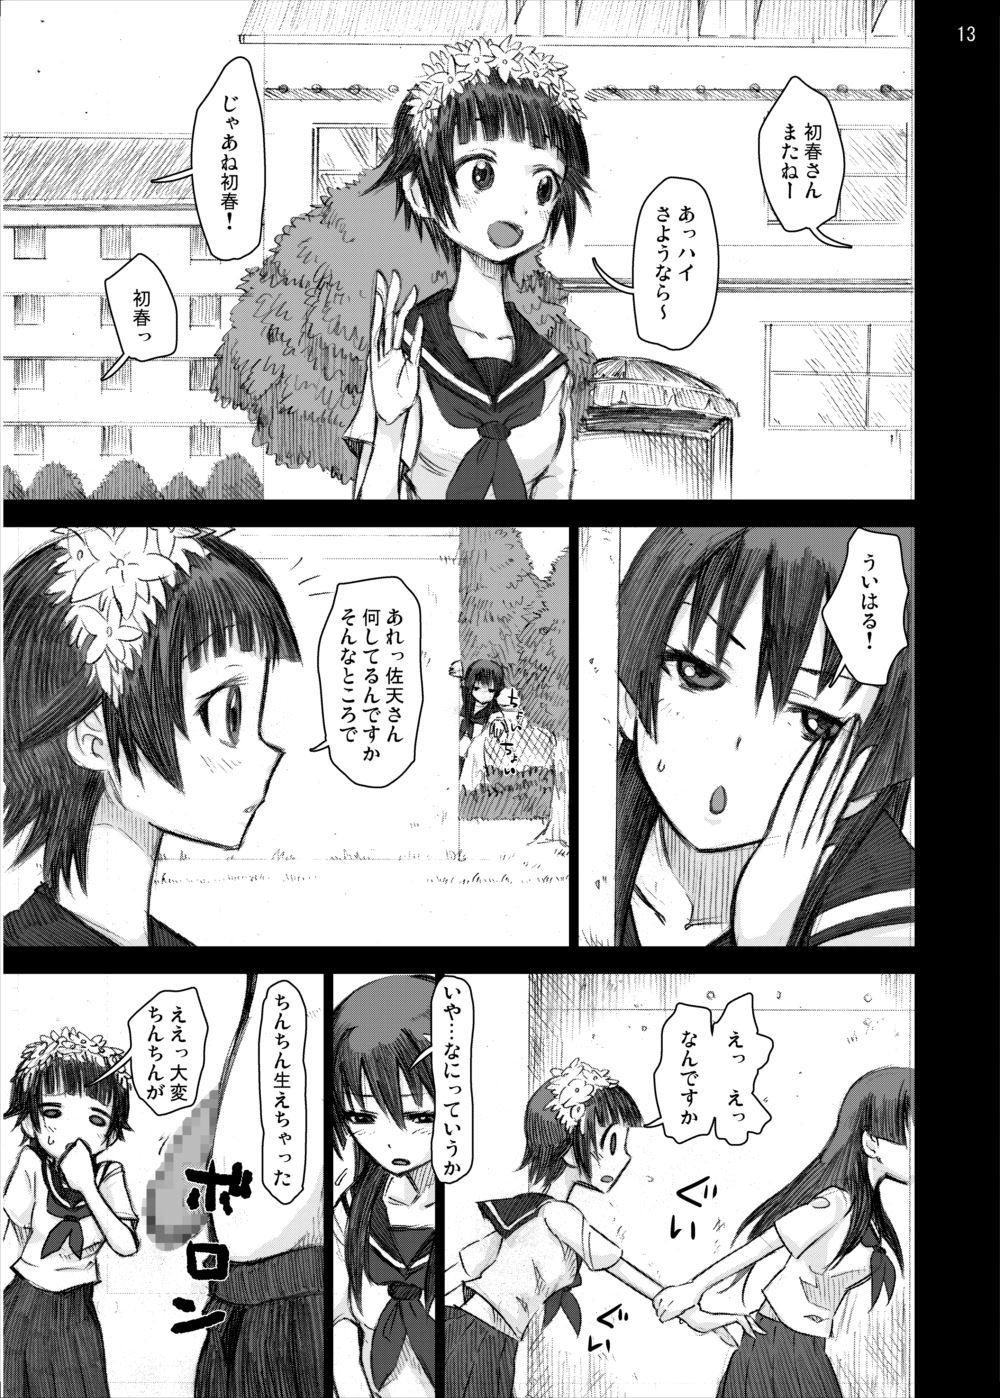 Boy Girl Ryoujoku Jigoku 4 - Futanari Stalker Rape... - Toaru kagaku no railgun Free Fucking - Page 12